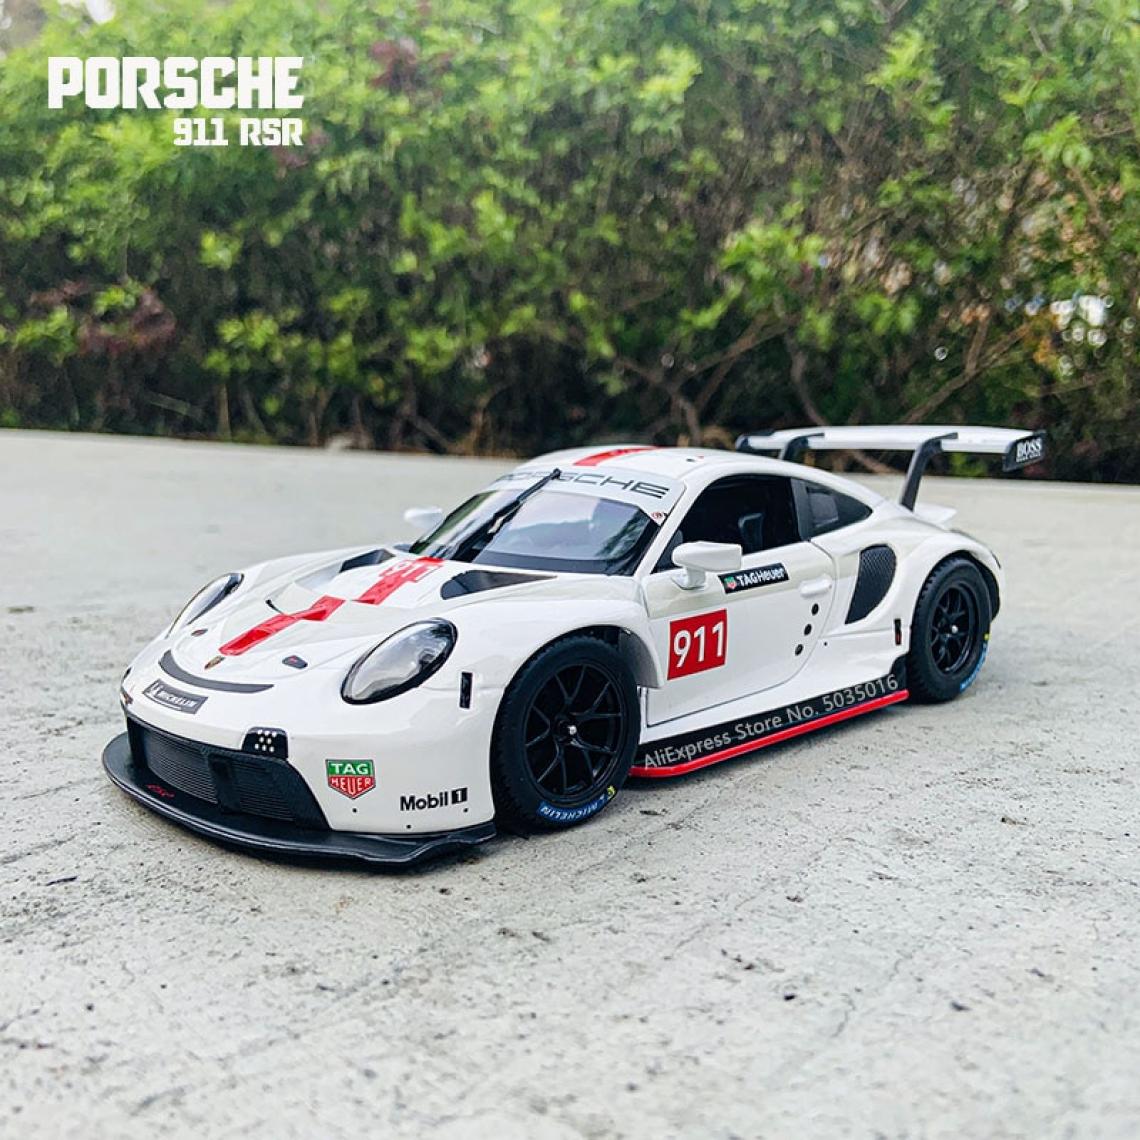 Universal - 1: 24 Porsche 911 RSR Racing Model de voiture en alliage moulé sous pression Art Decoration Tools Cadeau Factory Licence | Voiture jouet moulée sous pression (blanc) - Voitures